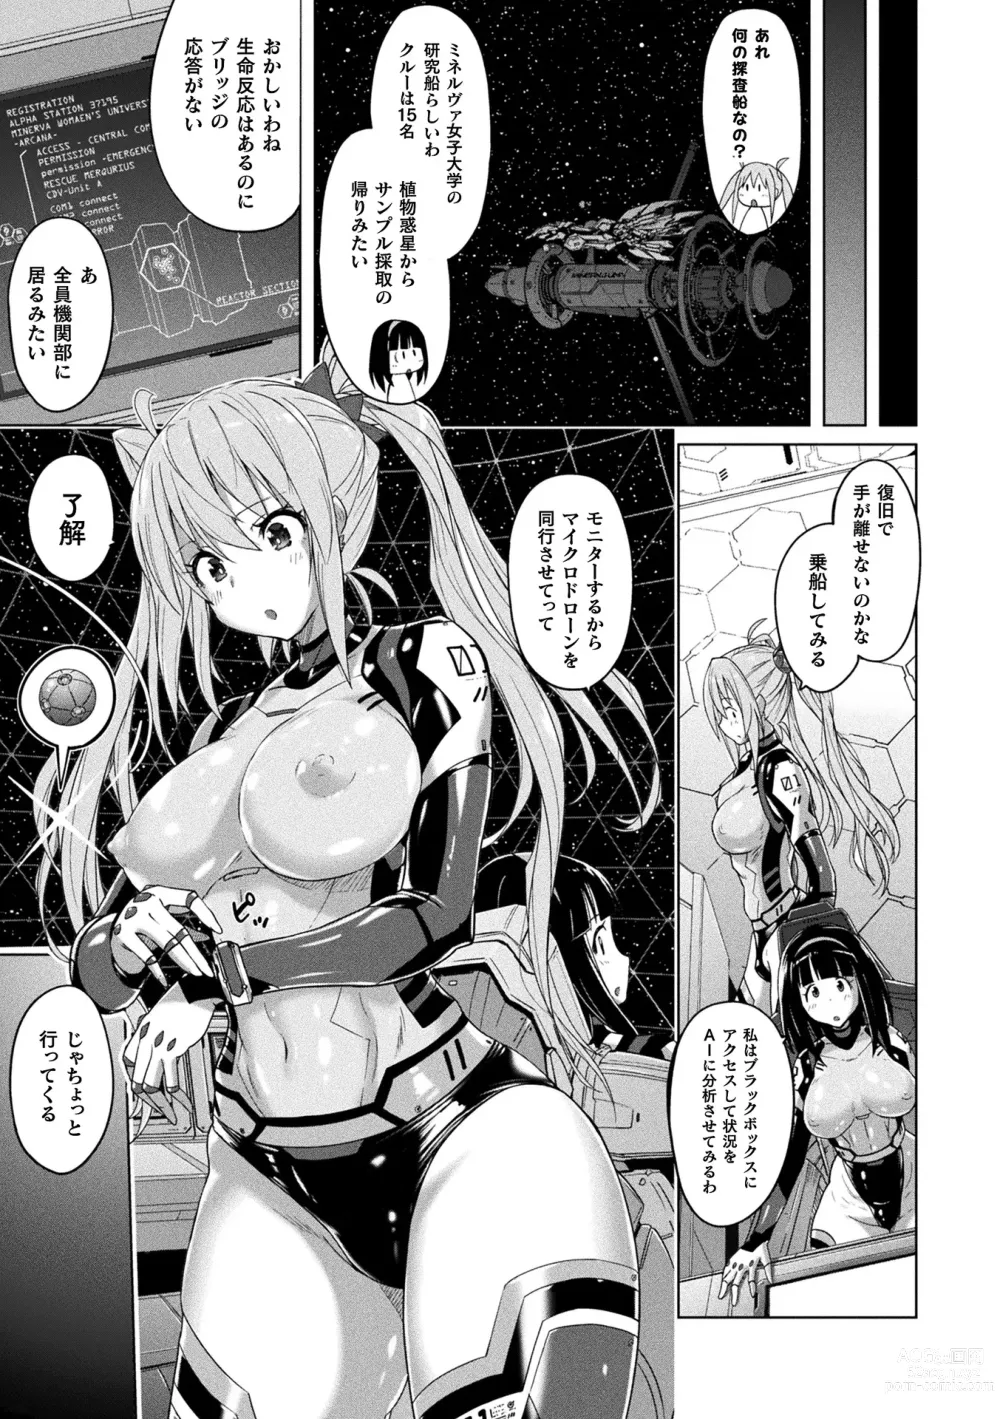 Page 9 of manga Picchiri Pantsism